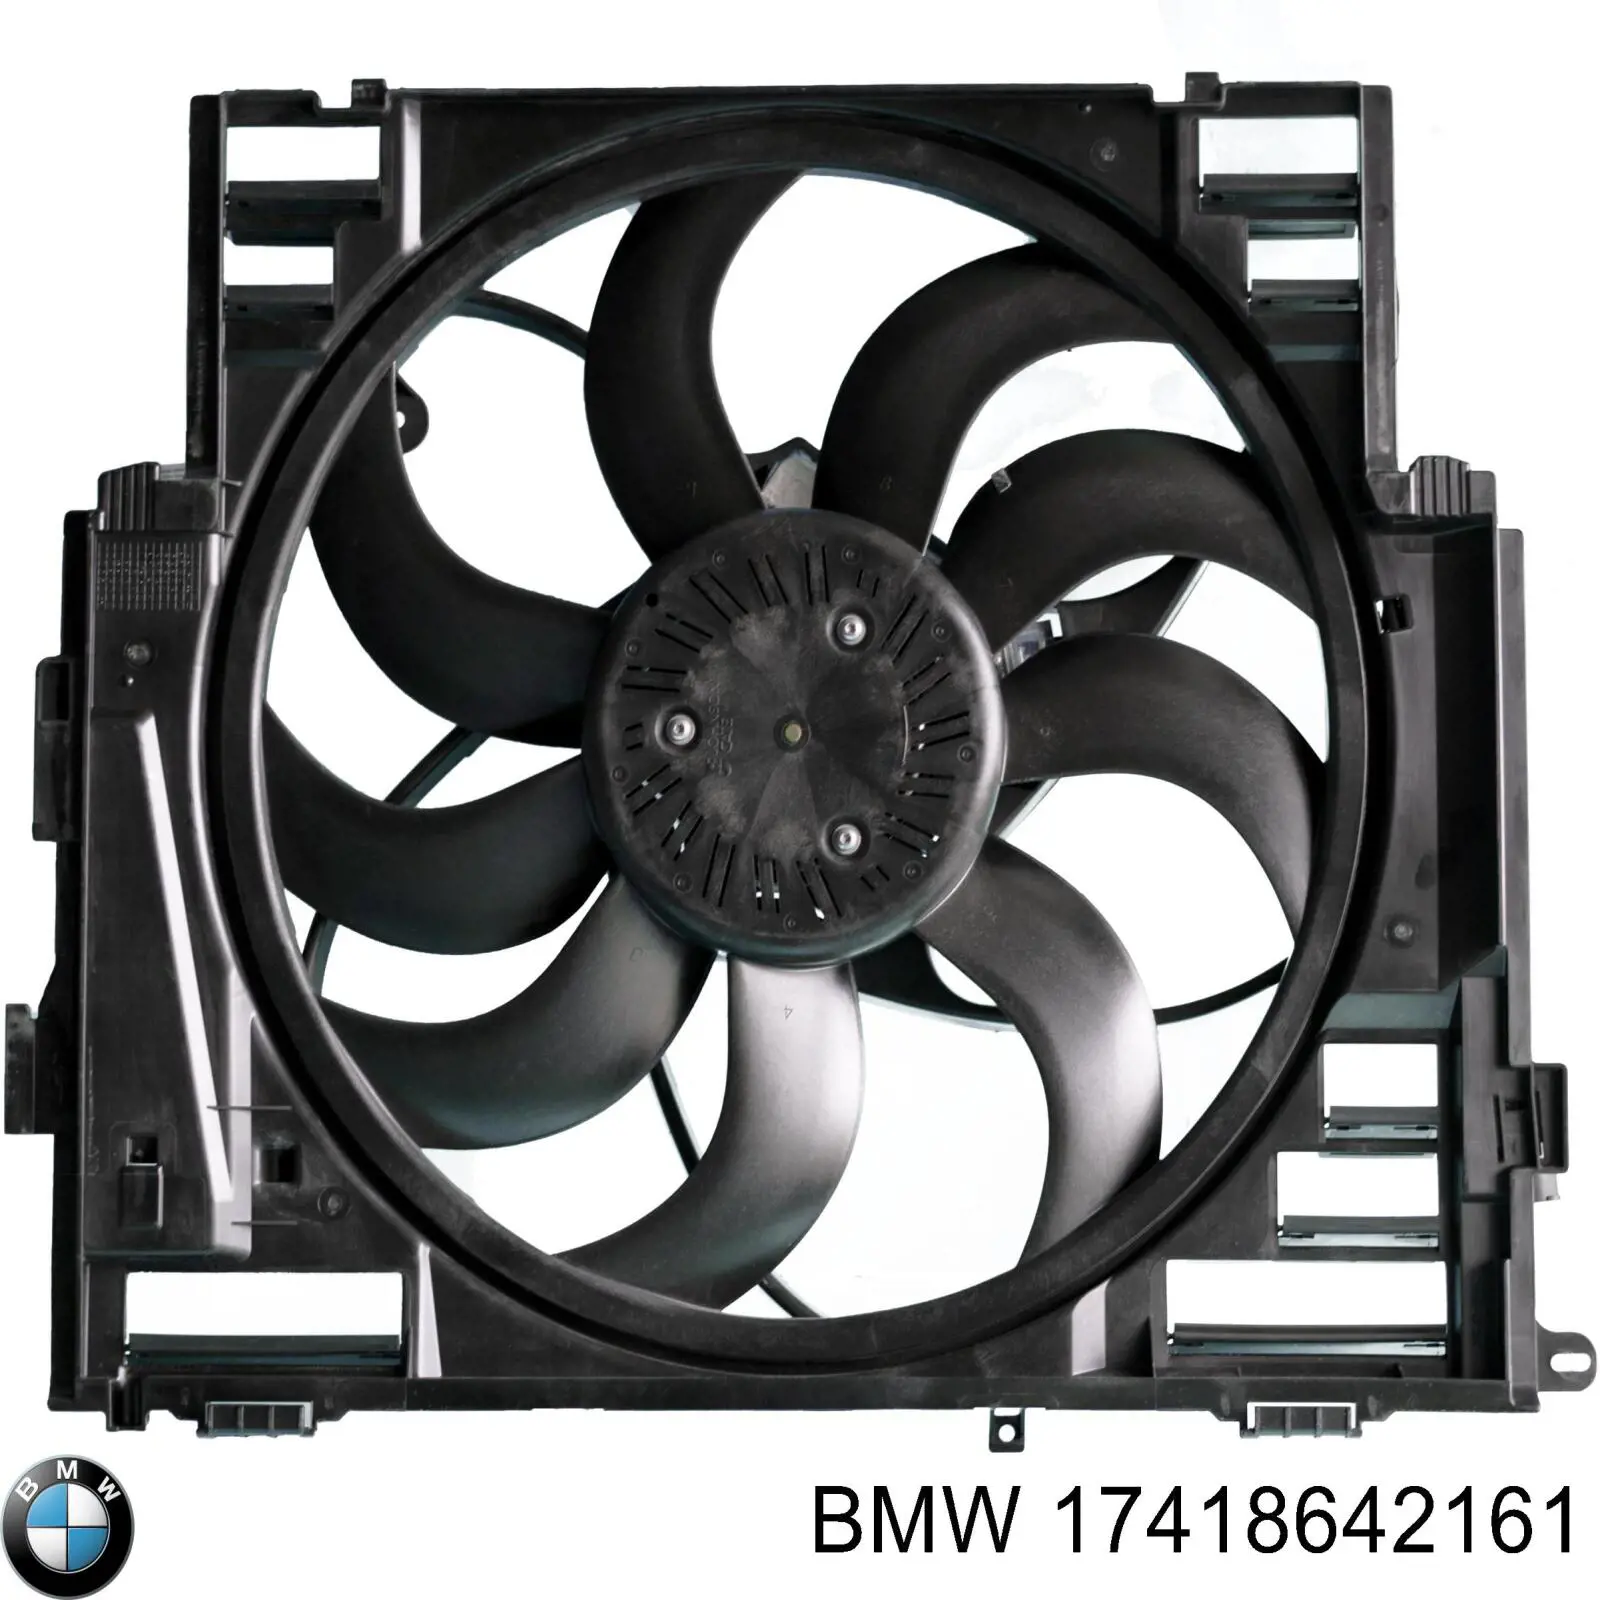 17418642161 BMW difusor de radiador, ventilador de refrigeración, condensador del aire acondicionado, completo con motor y rodete